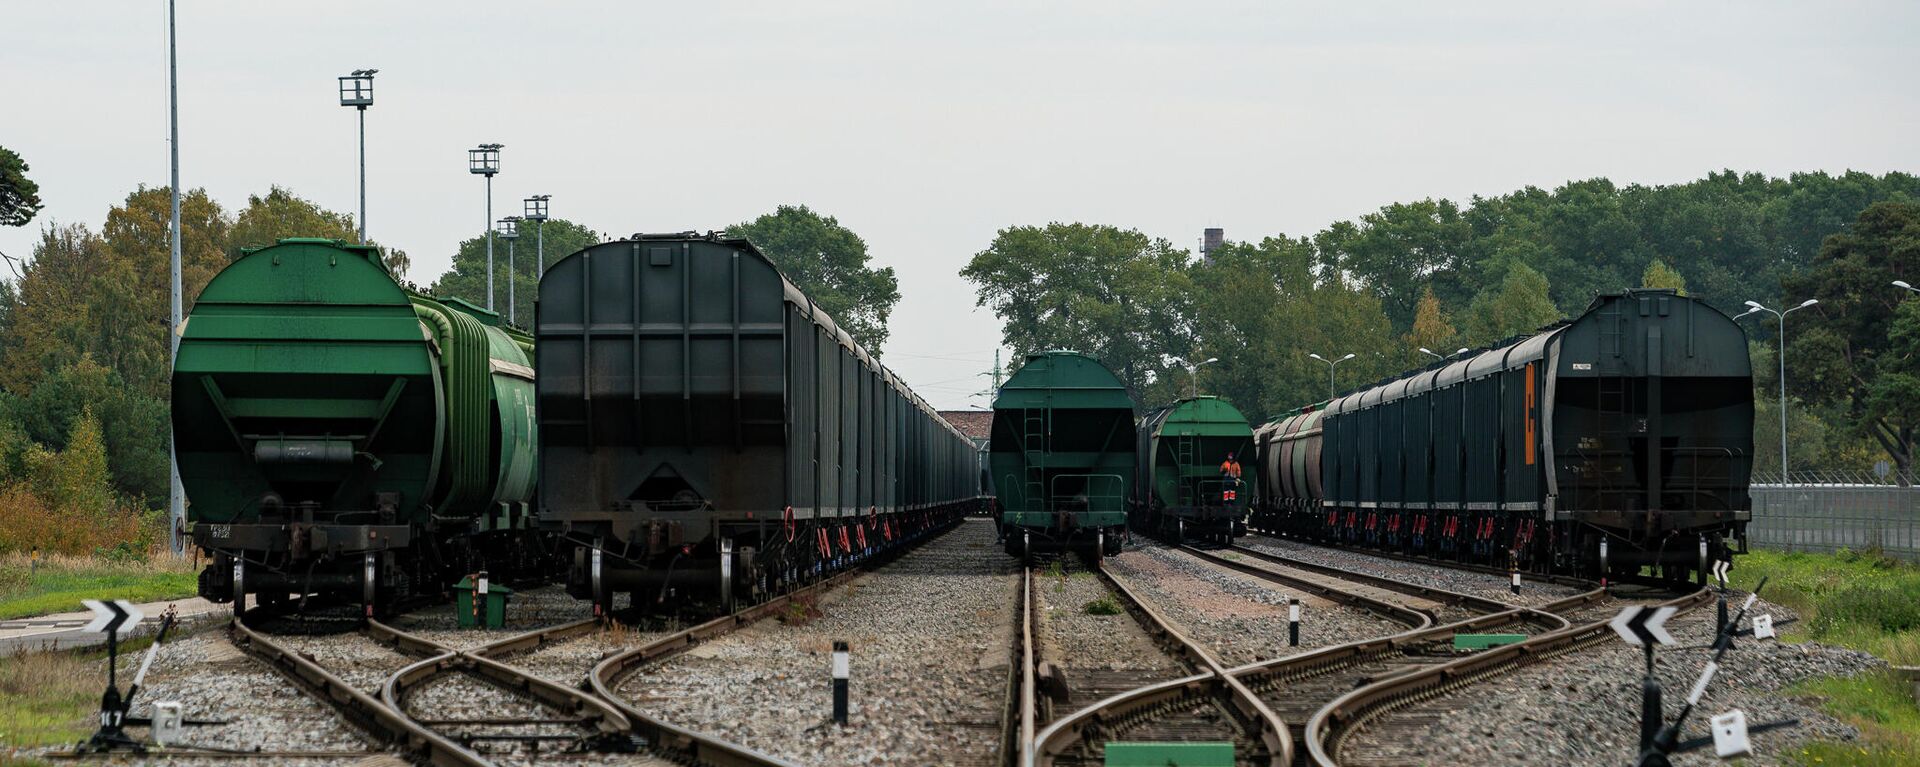 Железнодорожные вагоны с зерном на путях в Лиепае - Sputnik Латвия, 1920, 02.11.2021